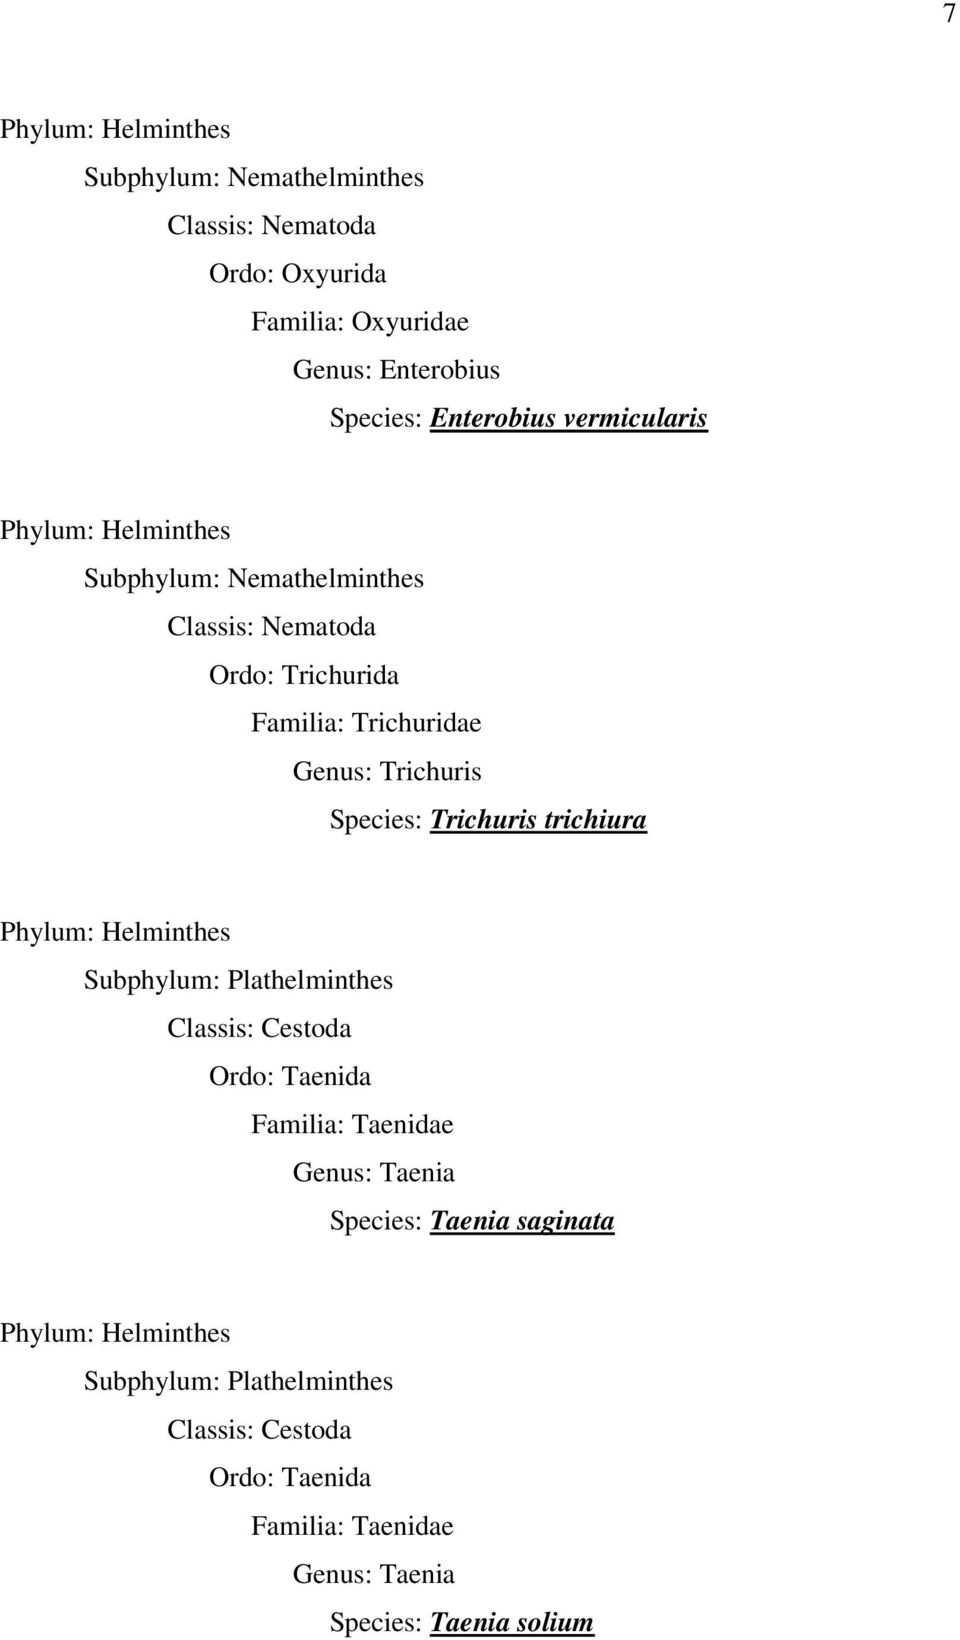 Trichuris trichiura Phylum: Helminthes Subphylum: Plathelminthes Classis: Cestoda Ordo: Taenida Familia: Taenidae Genus: Taenia Species: